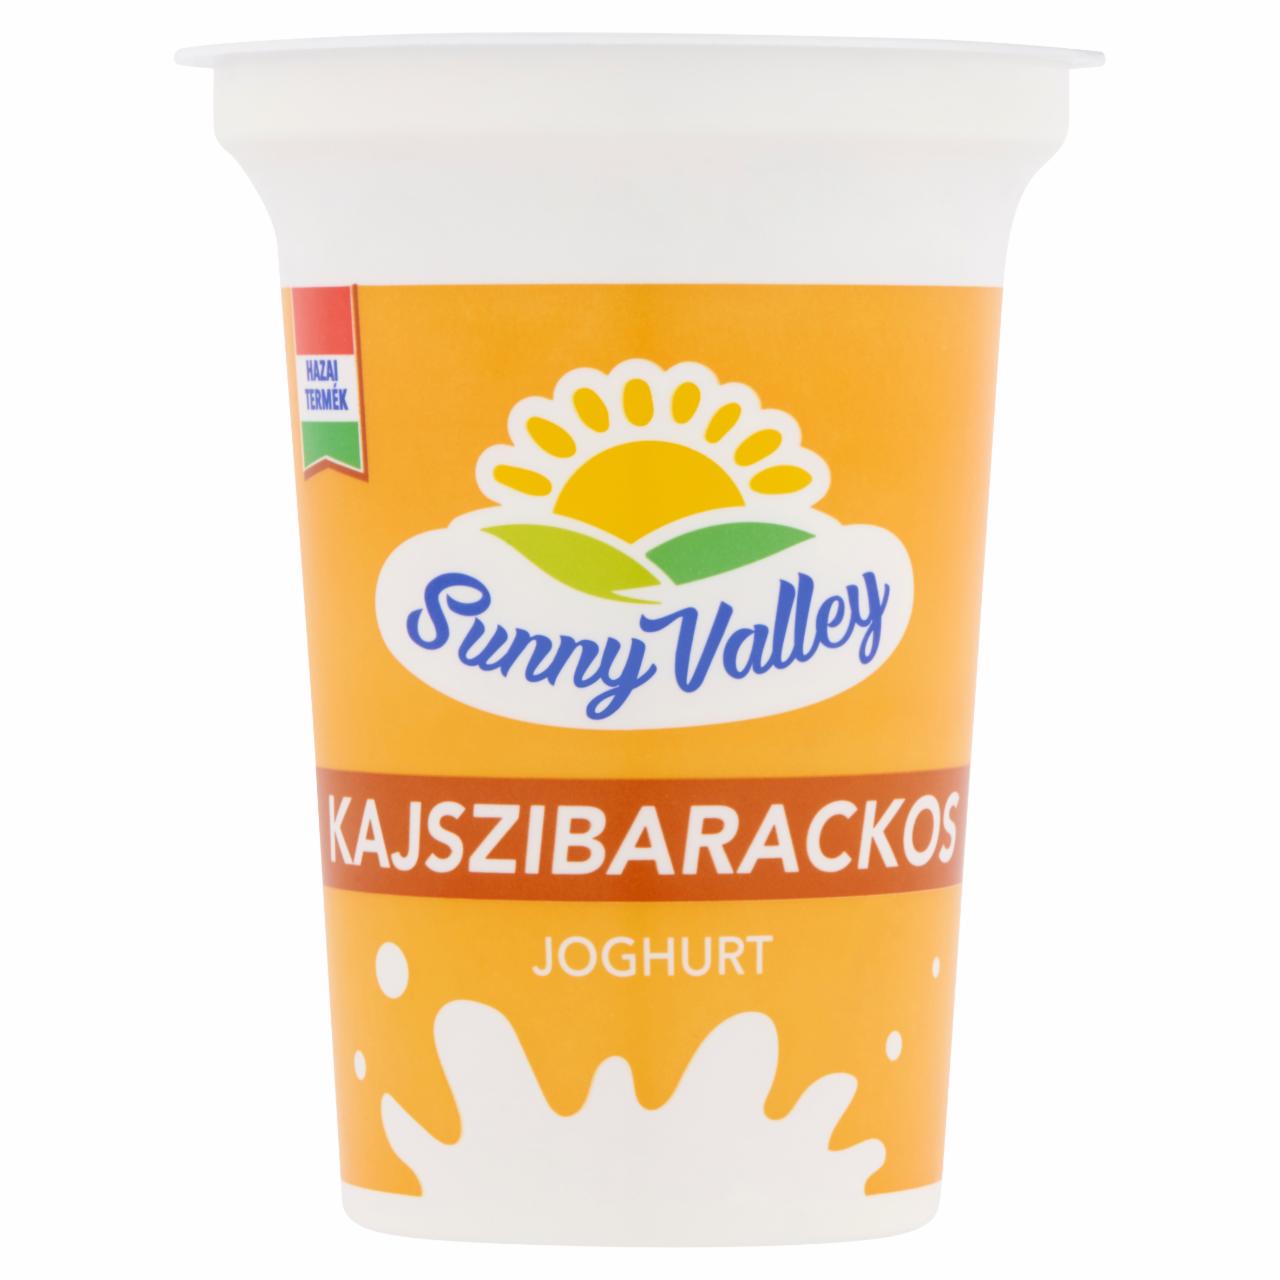 Képek - Sunny Valley élőflórás, zsírszegény kajszibarackos joghurt 375 g